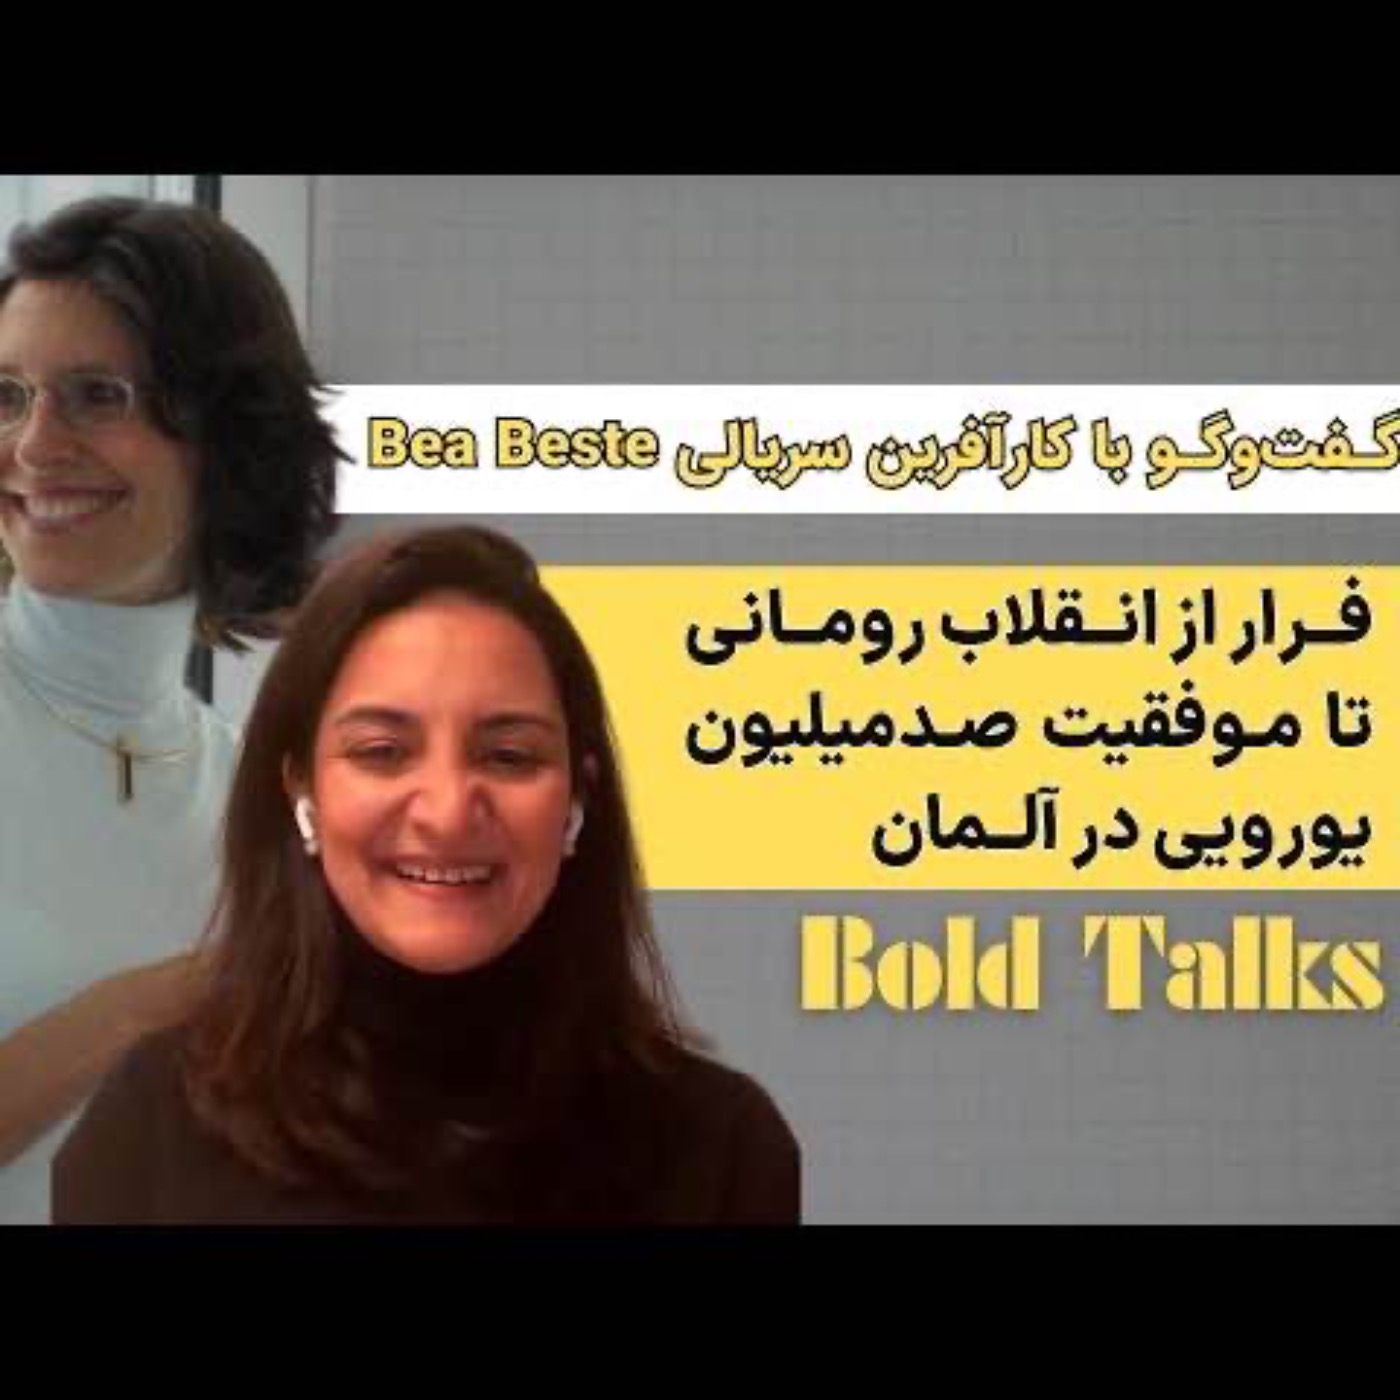 فرار از انقلاب رومانی تا موفقیت در آلمان با کارآفرین سریالی|Bold Talks with Bea Beste زیرنویس فارسی